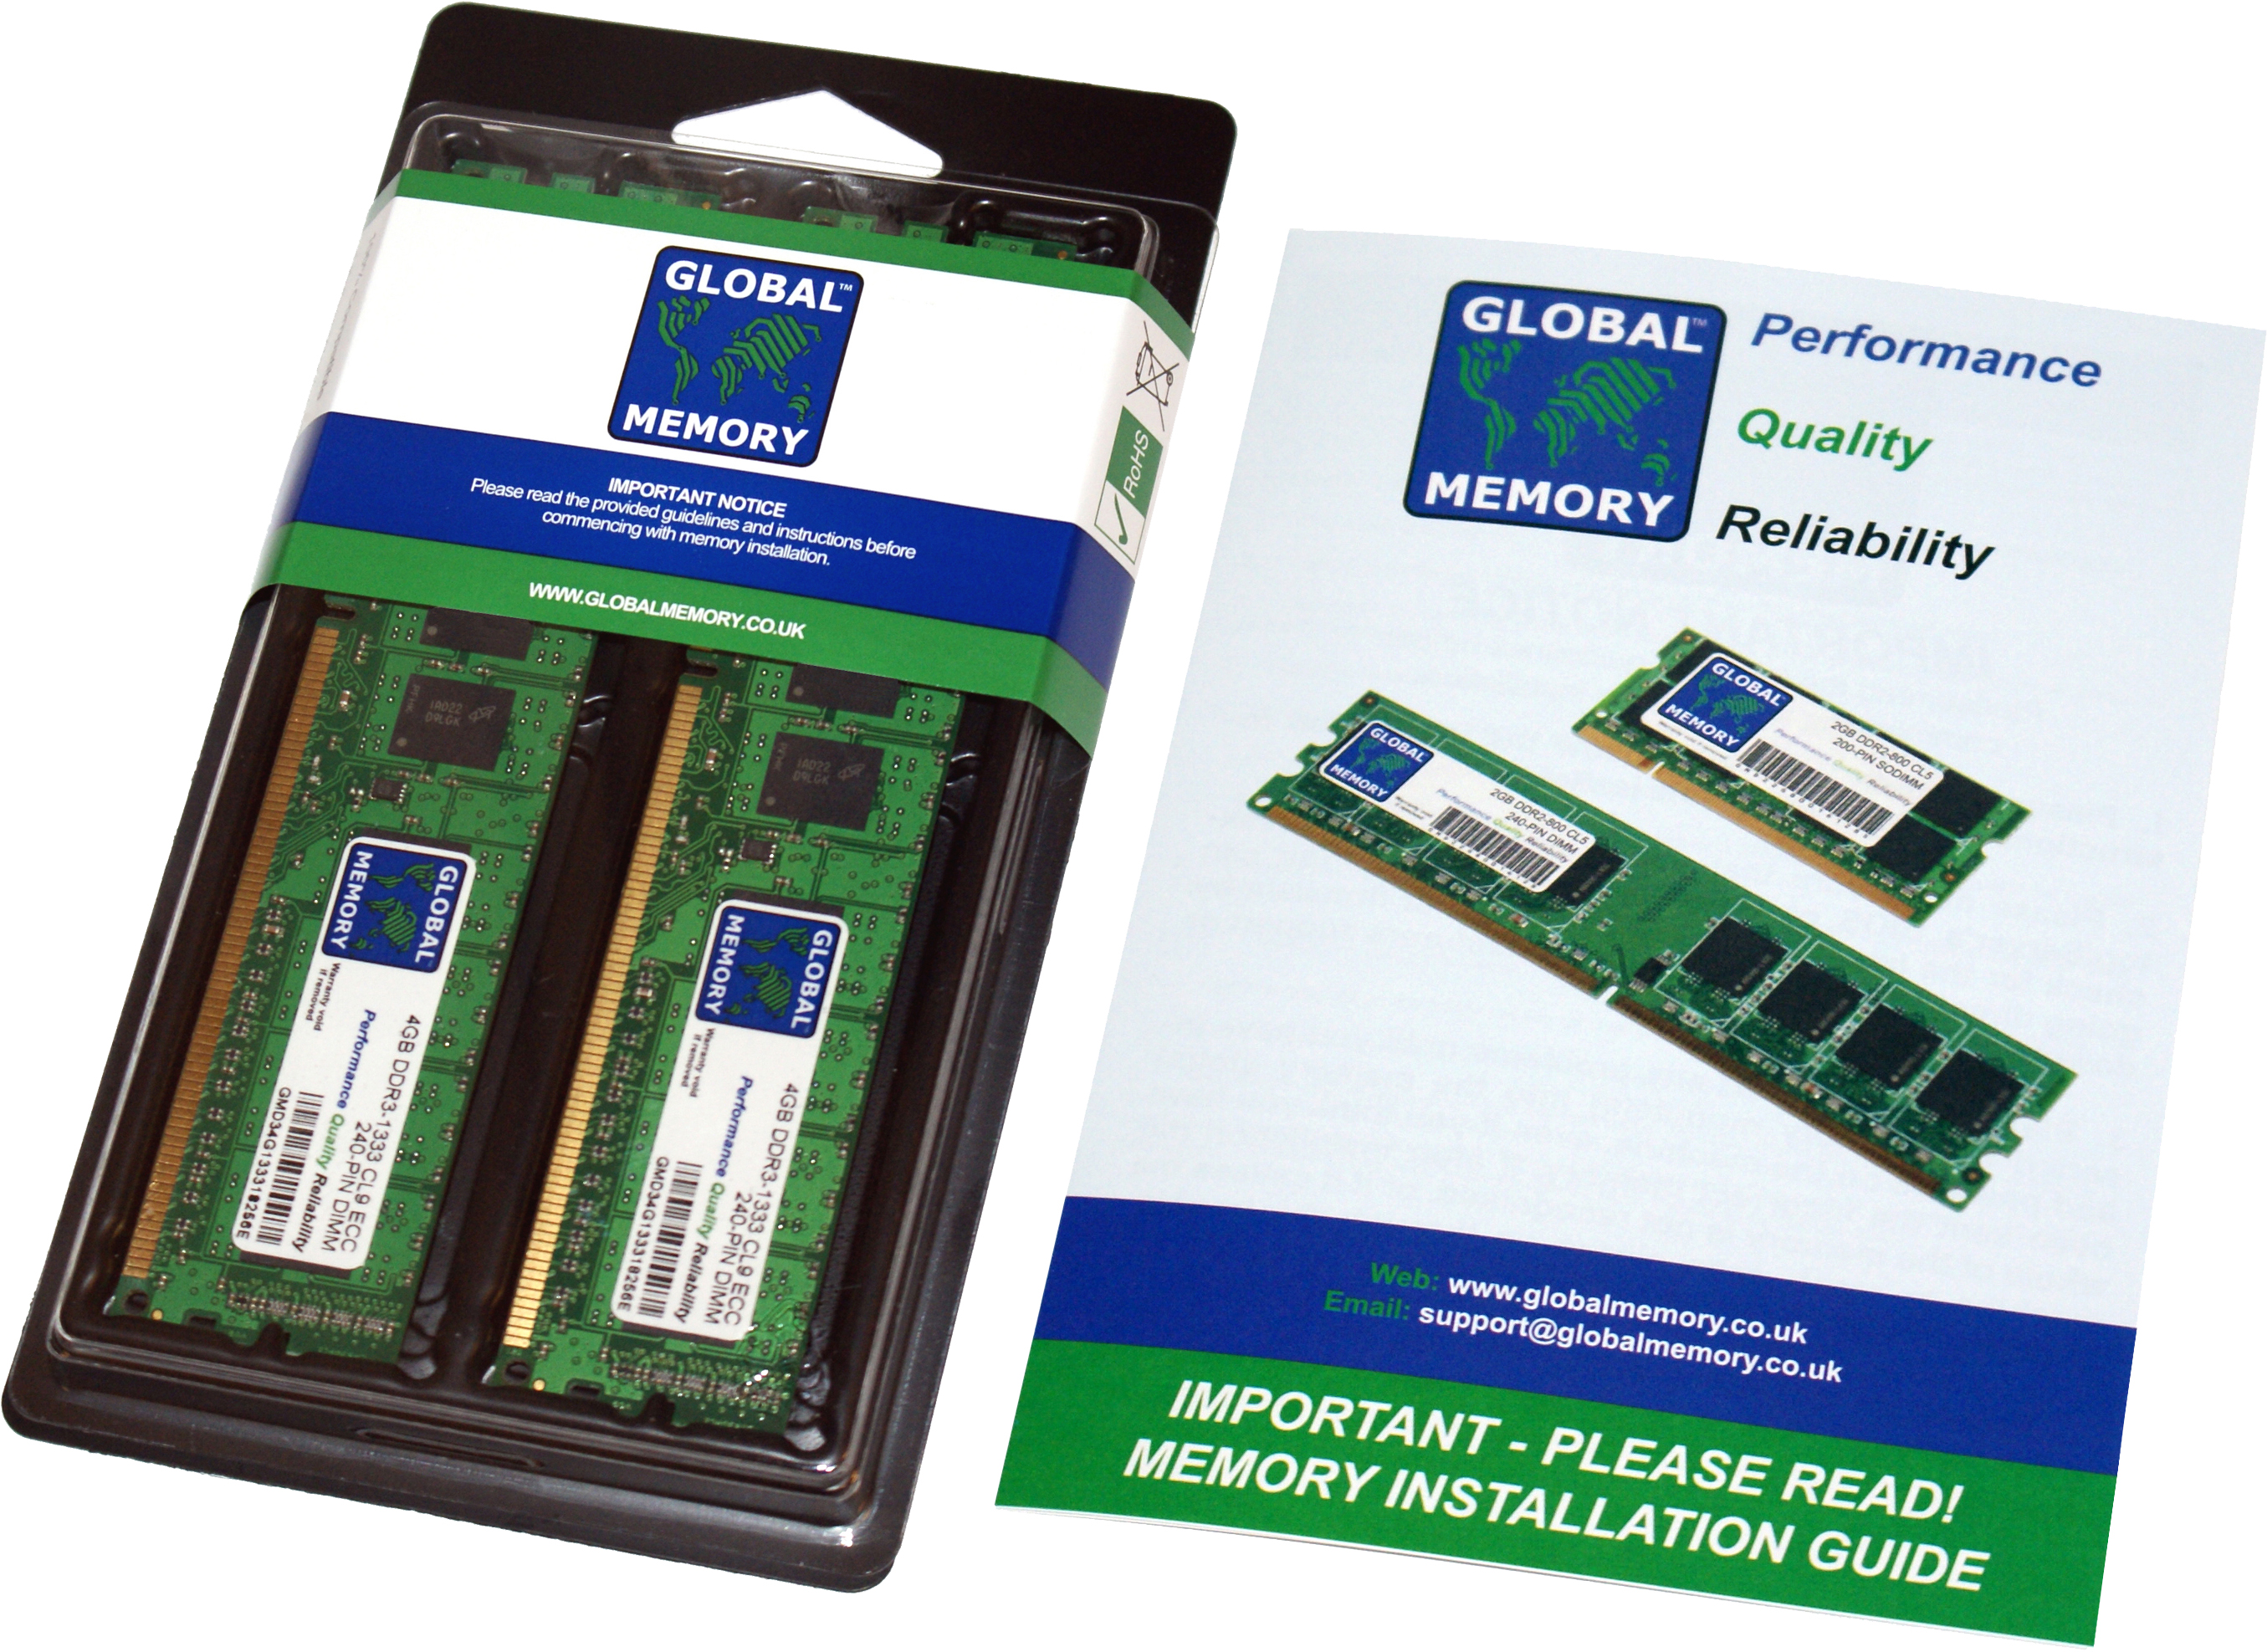 32GB (2 x 16GB) DDR4 2400MHz PC4-19200 288-PIN ECC DIMM (UDIMM) MEMORY RAM KIT FOR HEWLETT-PACKARD SERVERS/WORKSTATIONS